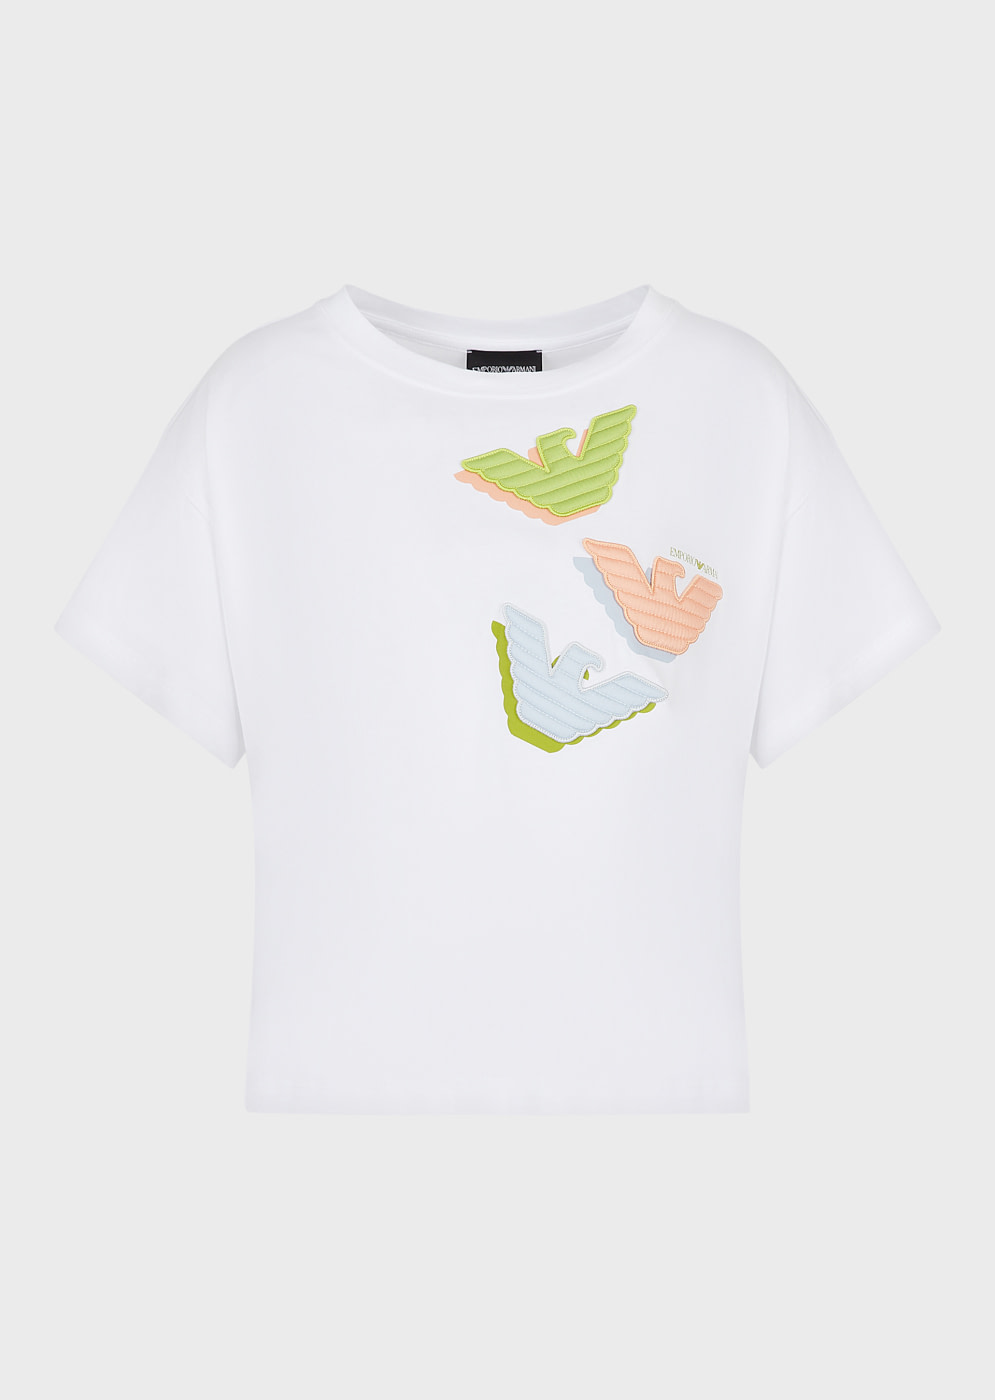 EMPORIO ARMANI camiseta manga corta blanca  con aplicaciones de águila multicolor